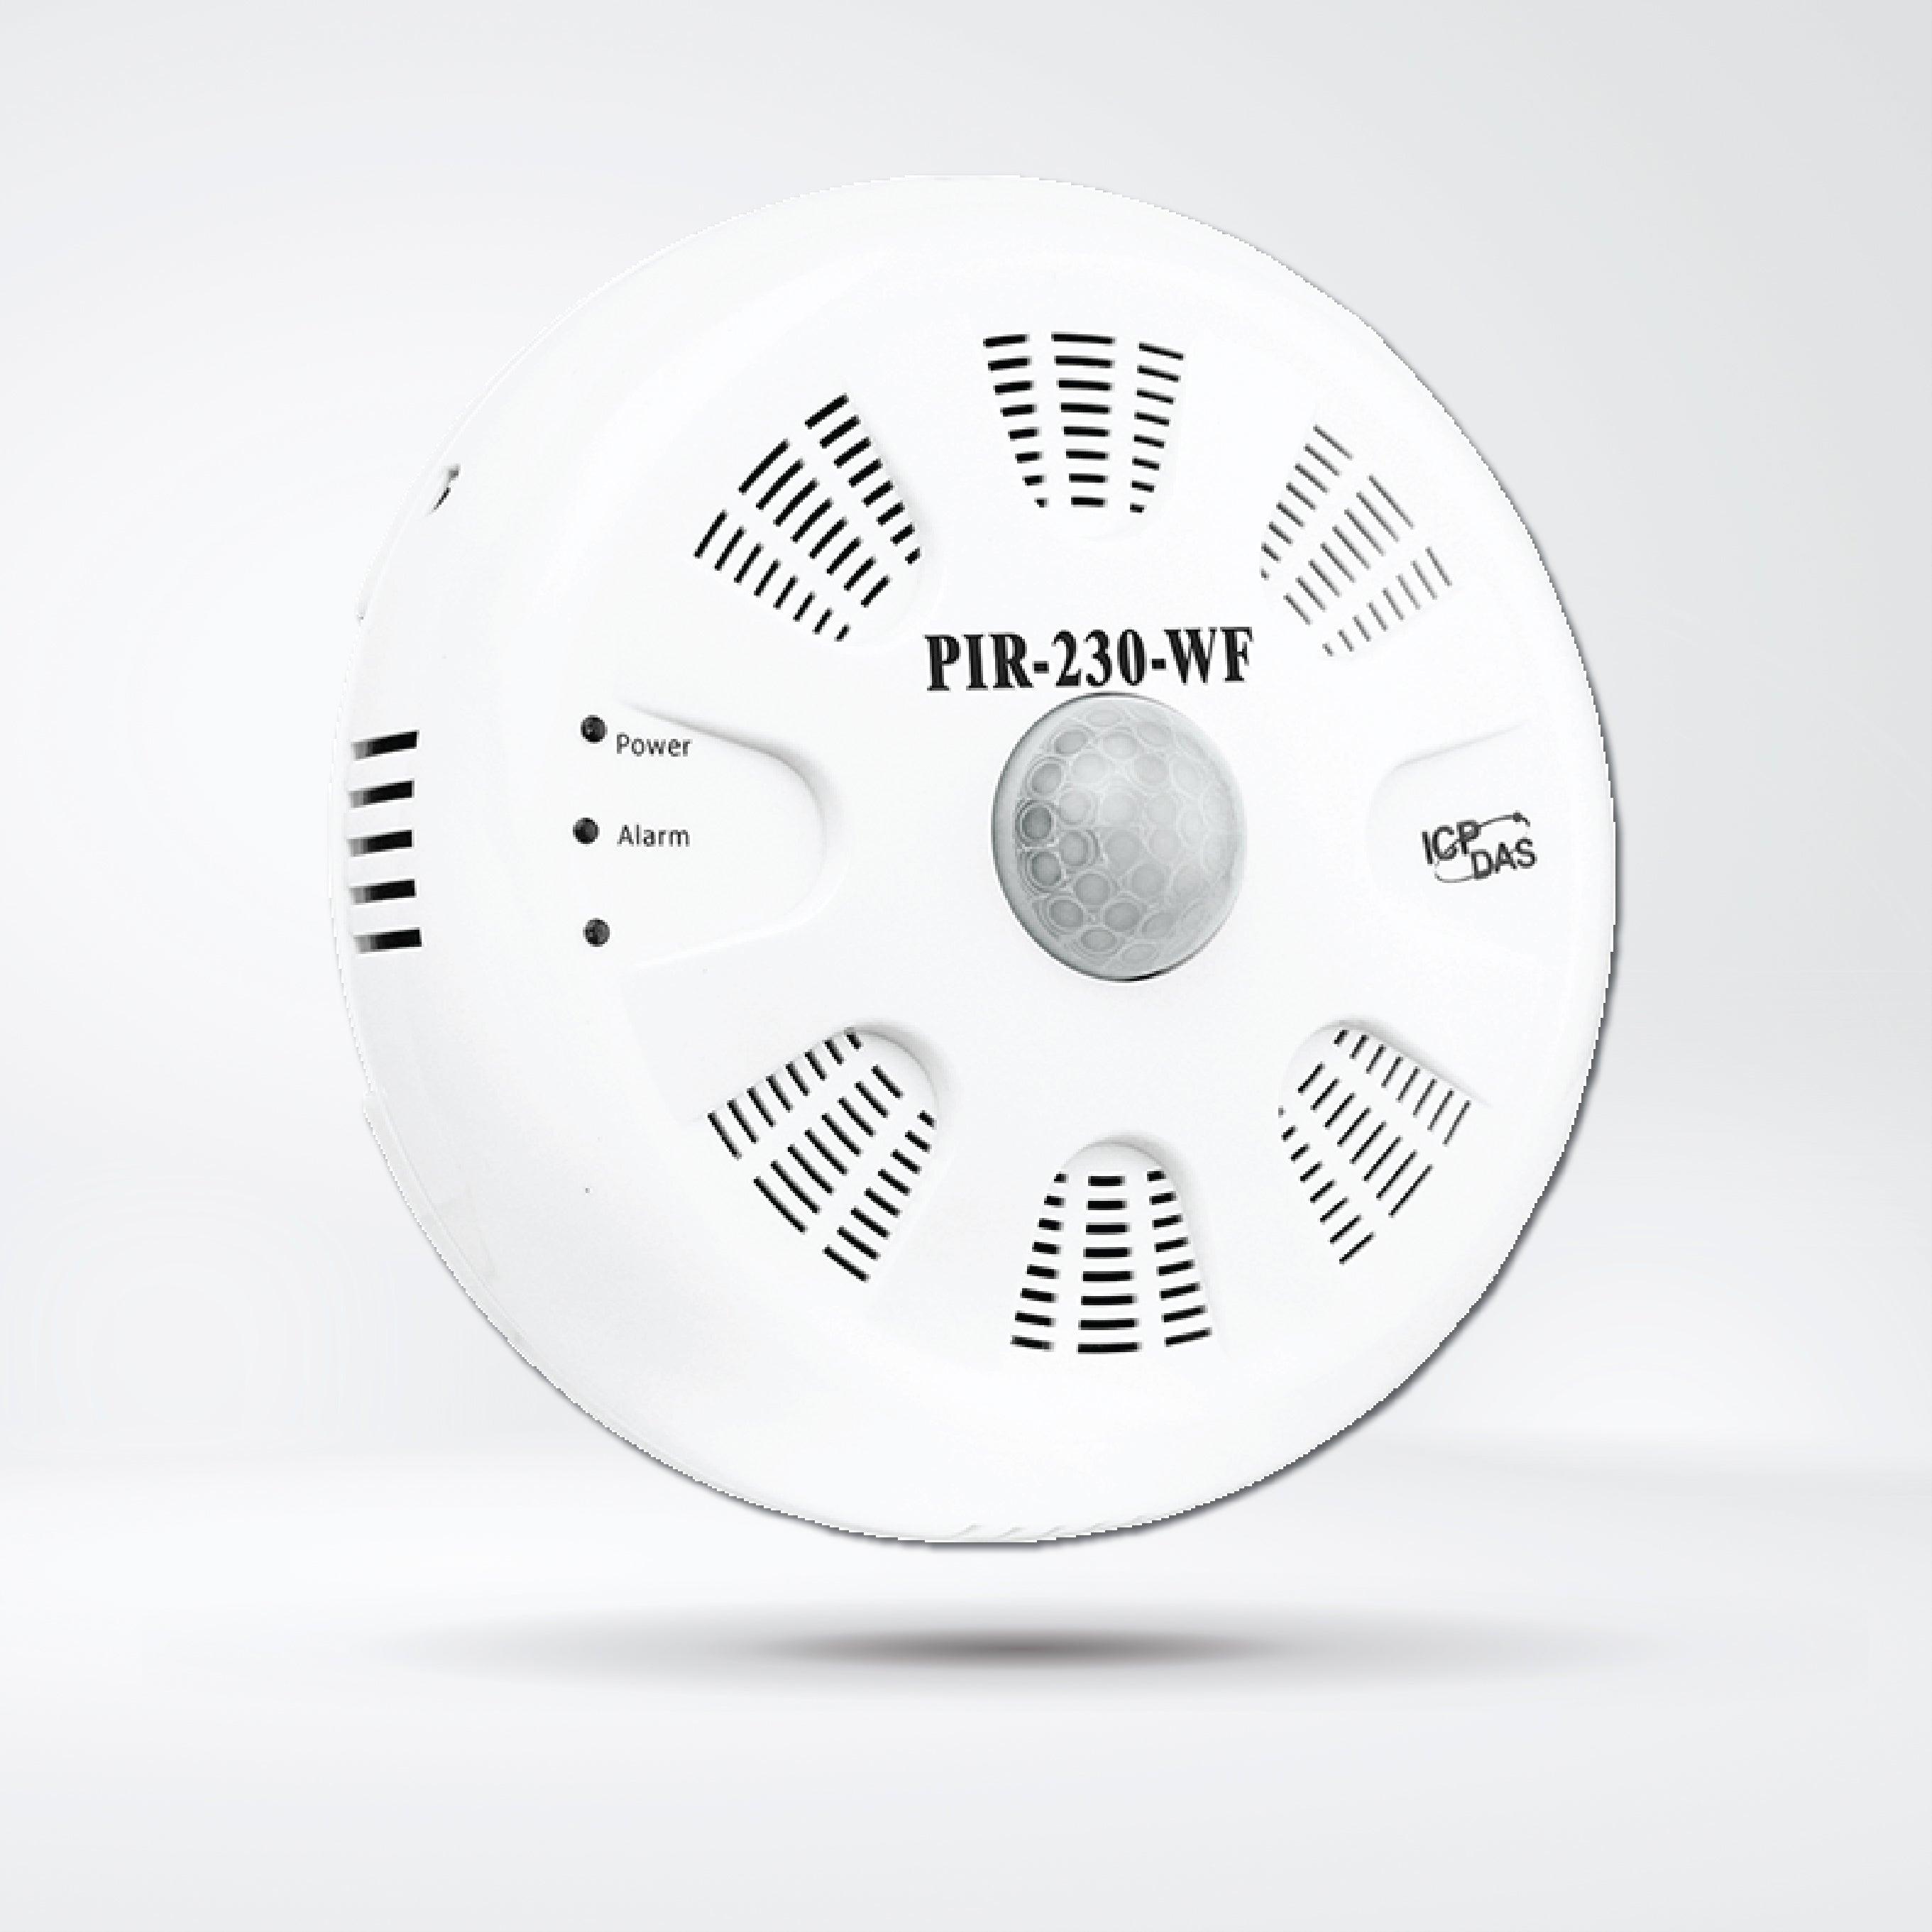 PIR-230-WF PIR Motion Sensor (4m), Temperature and Humidity Sensor Module (Asia Only) - Riverplus